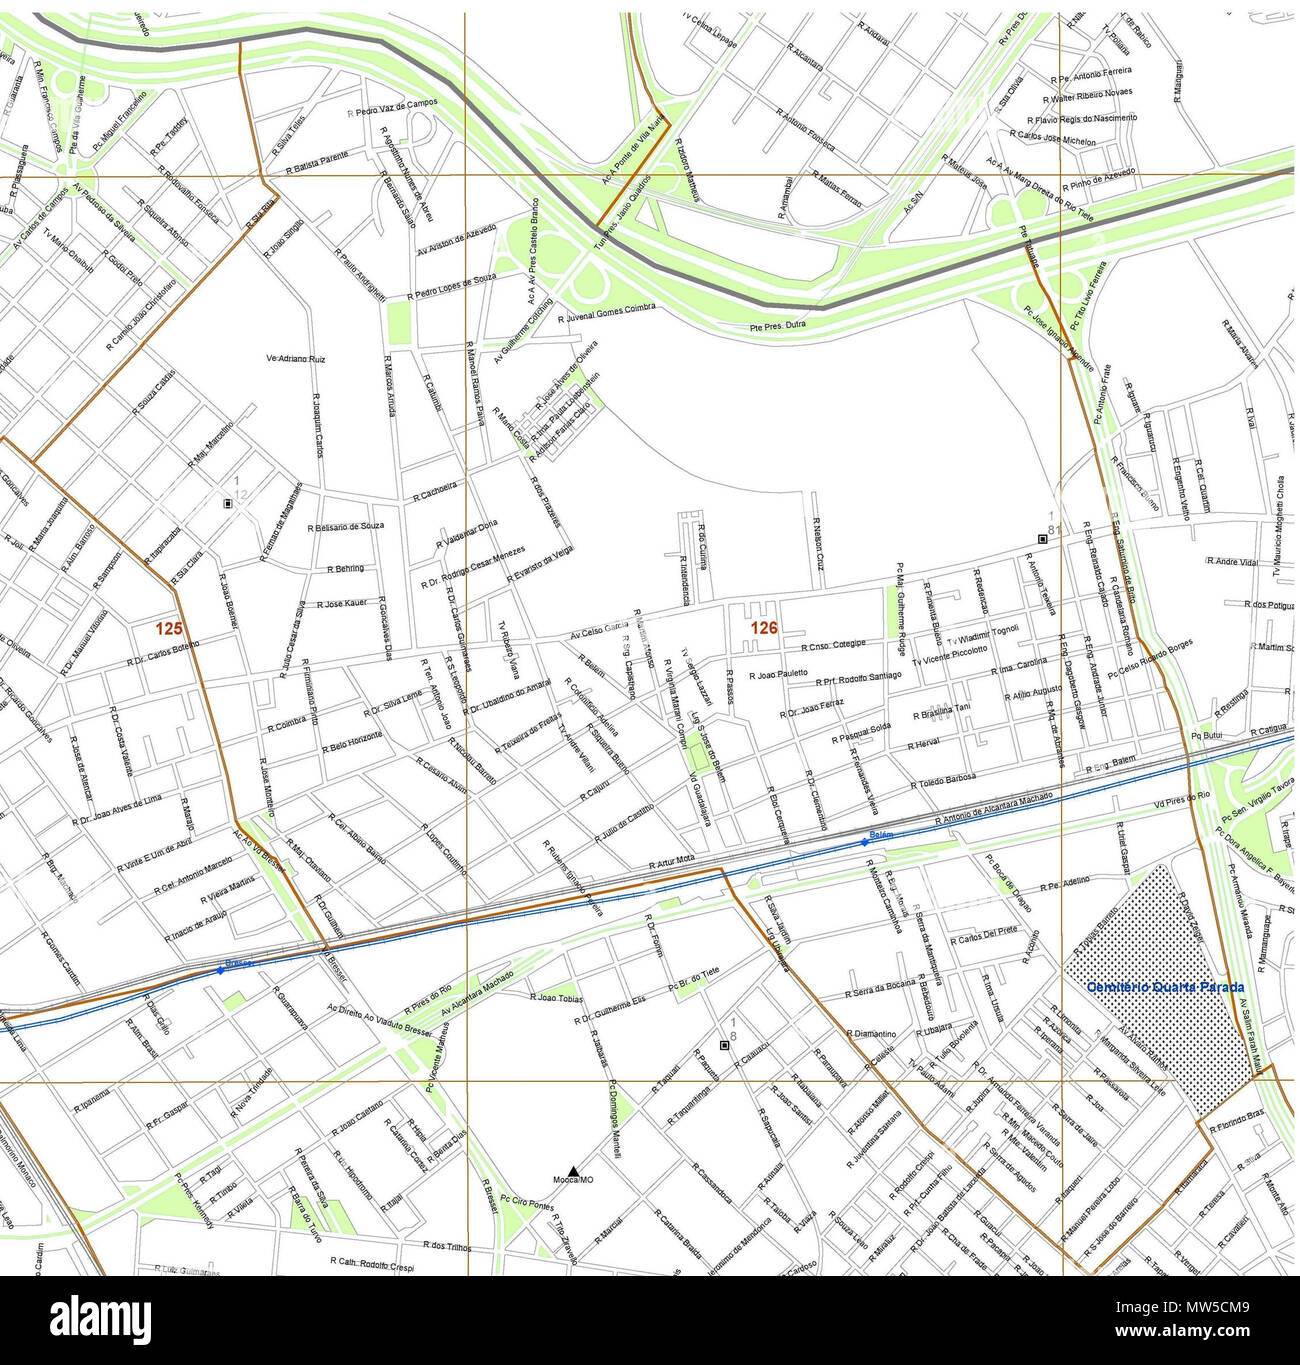 . Português: Mapa do Distrito do Belem, São Paulo - SP . 2 February 2016, 16:38:22. Prefeitura da Cidade de São Paulo 394 Mapa Base-page-001 Stock Photo